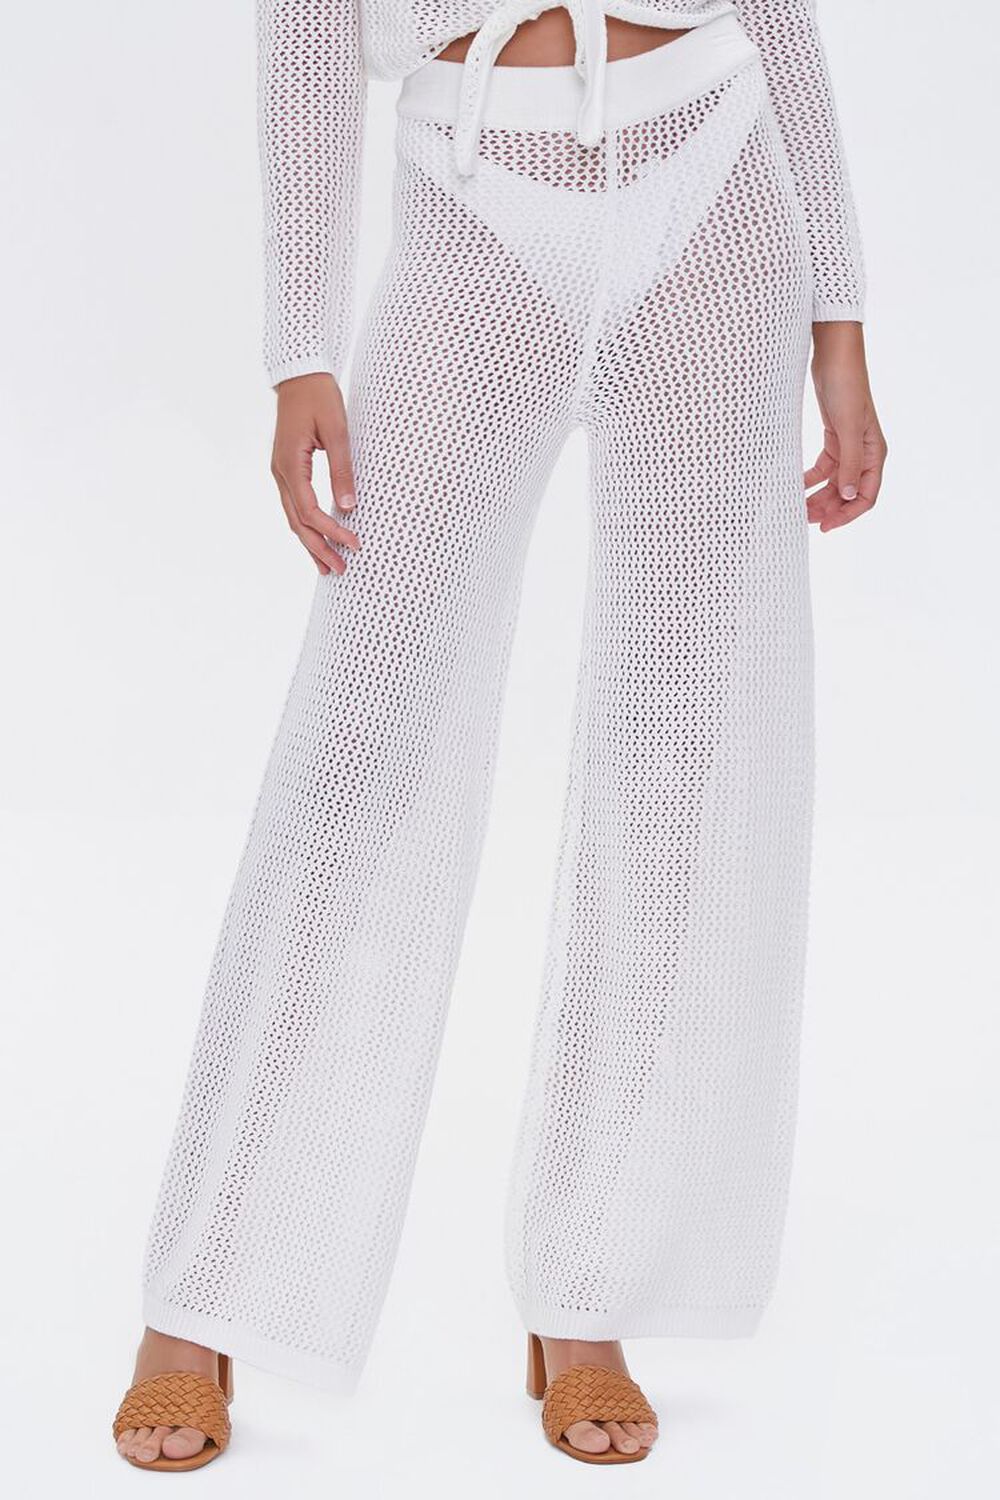 WHITE Sheer Fishnet Pants, image 2